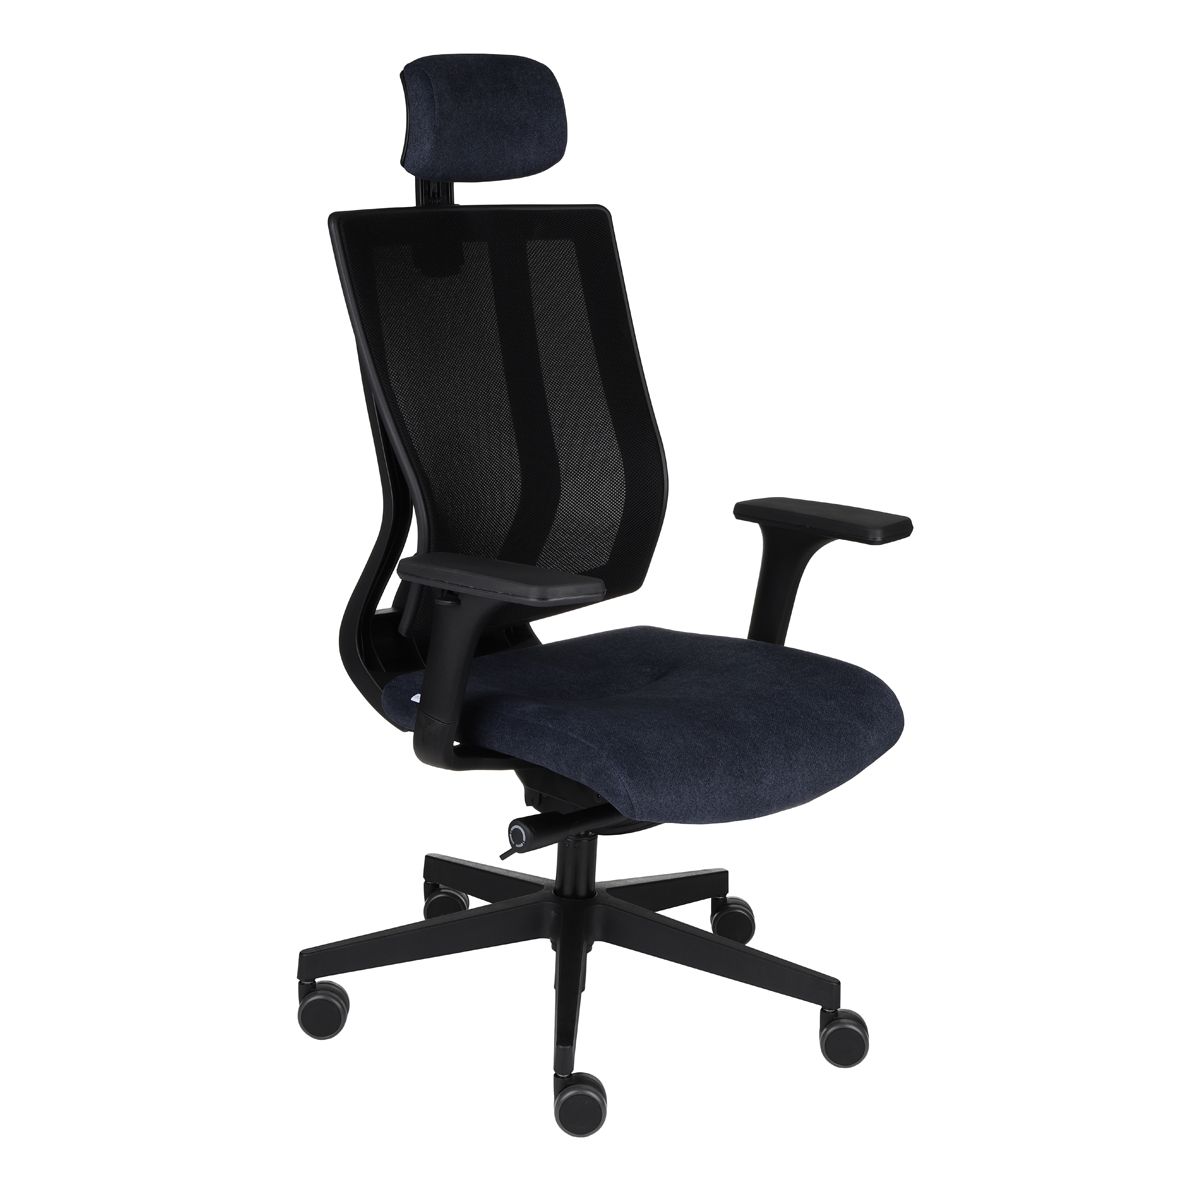 Kancelárska stolička s podrúčkami Mixerot BS HD - čierna - nabbi.sk